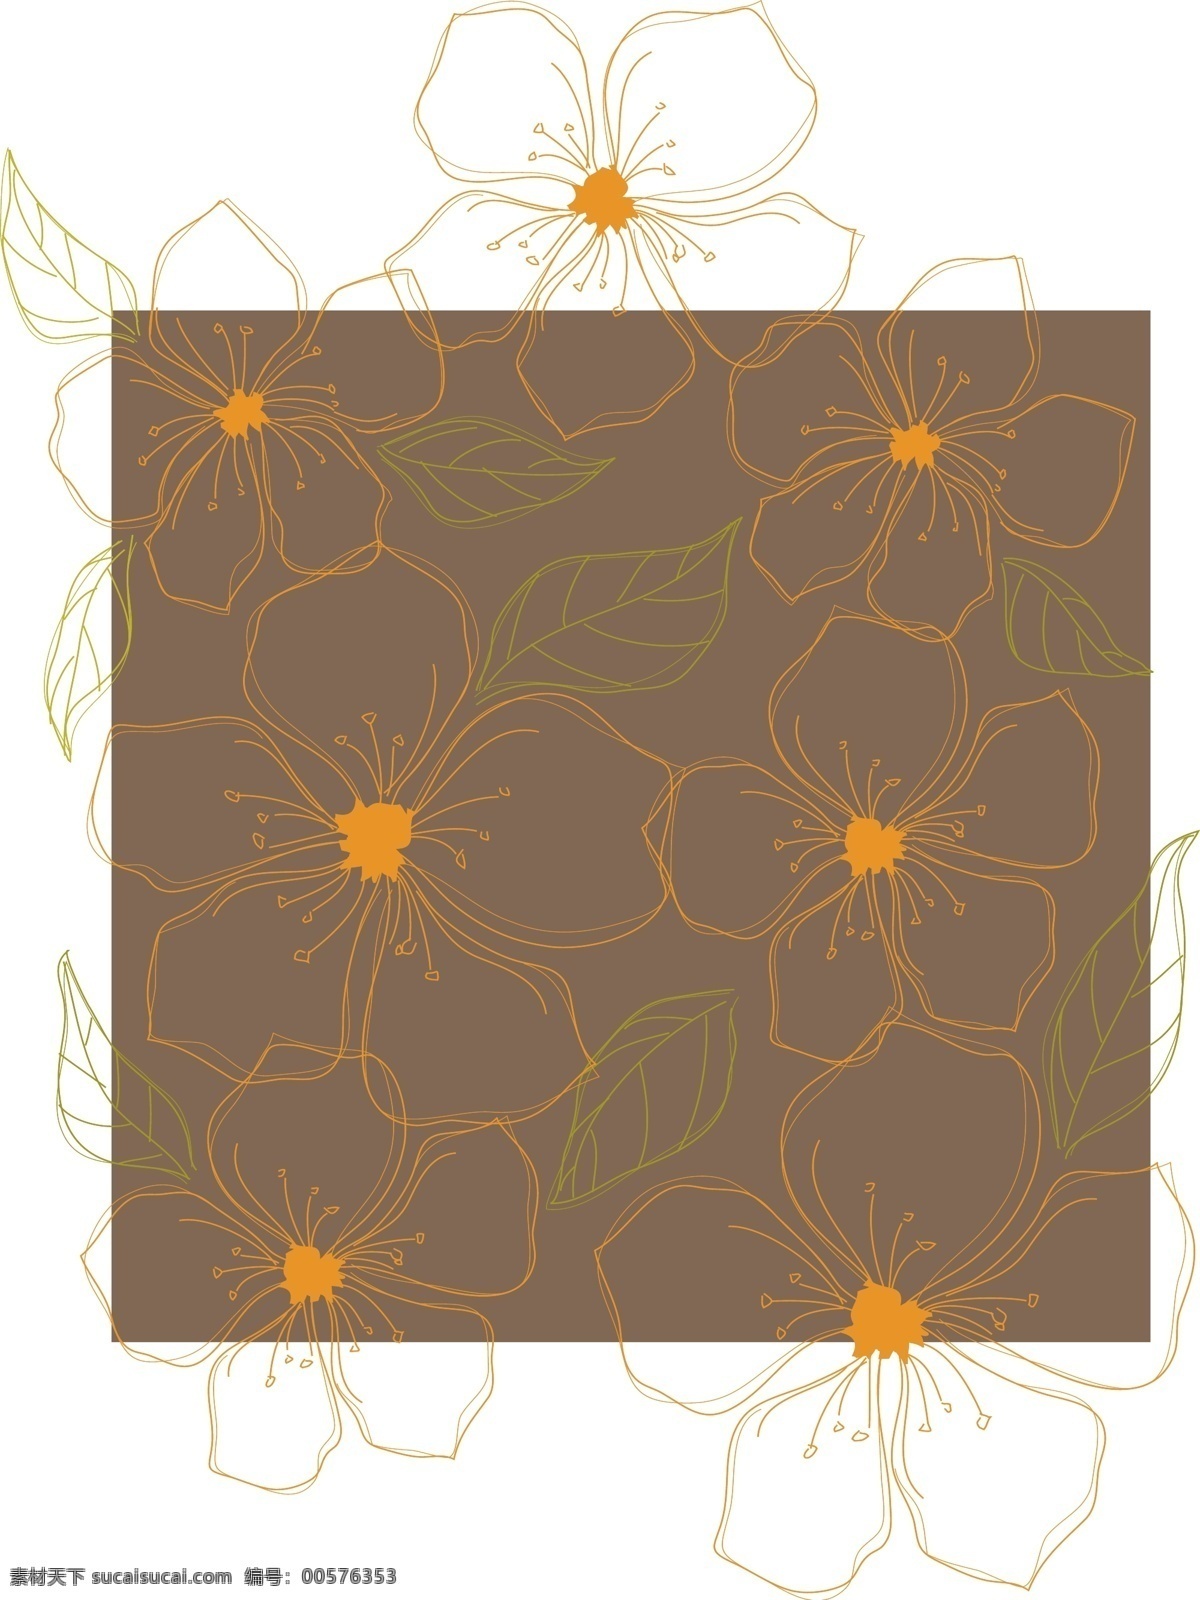 褐色 背景 花卉 印花 图案 背景图 底纹背景 印花图案 褐色背景花卉 橙色 描 矢量图 花纹花边